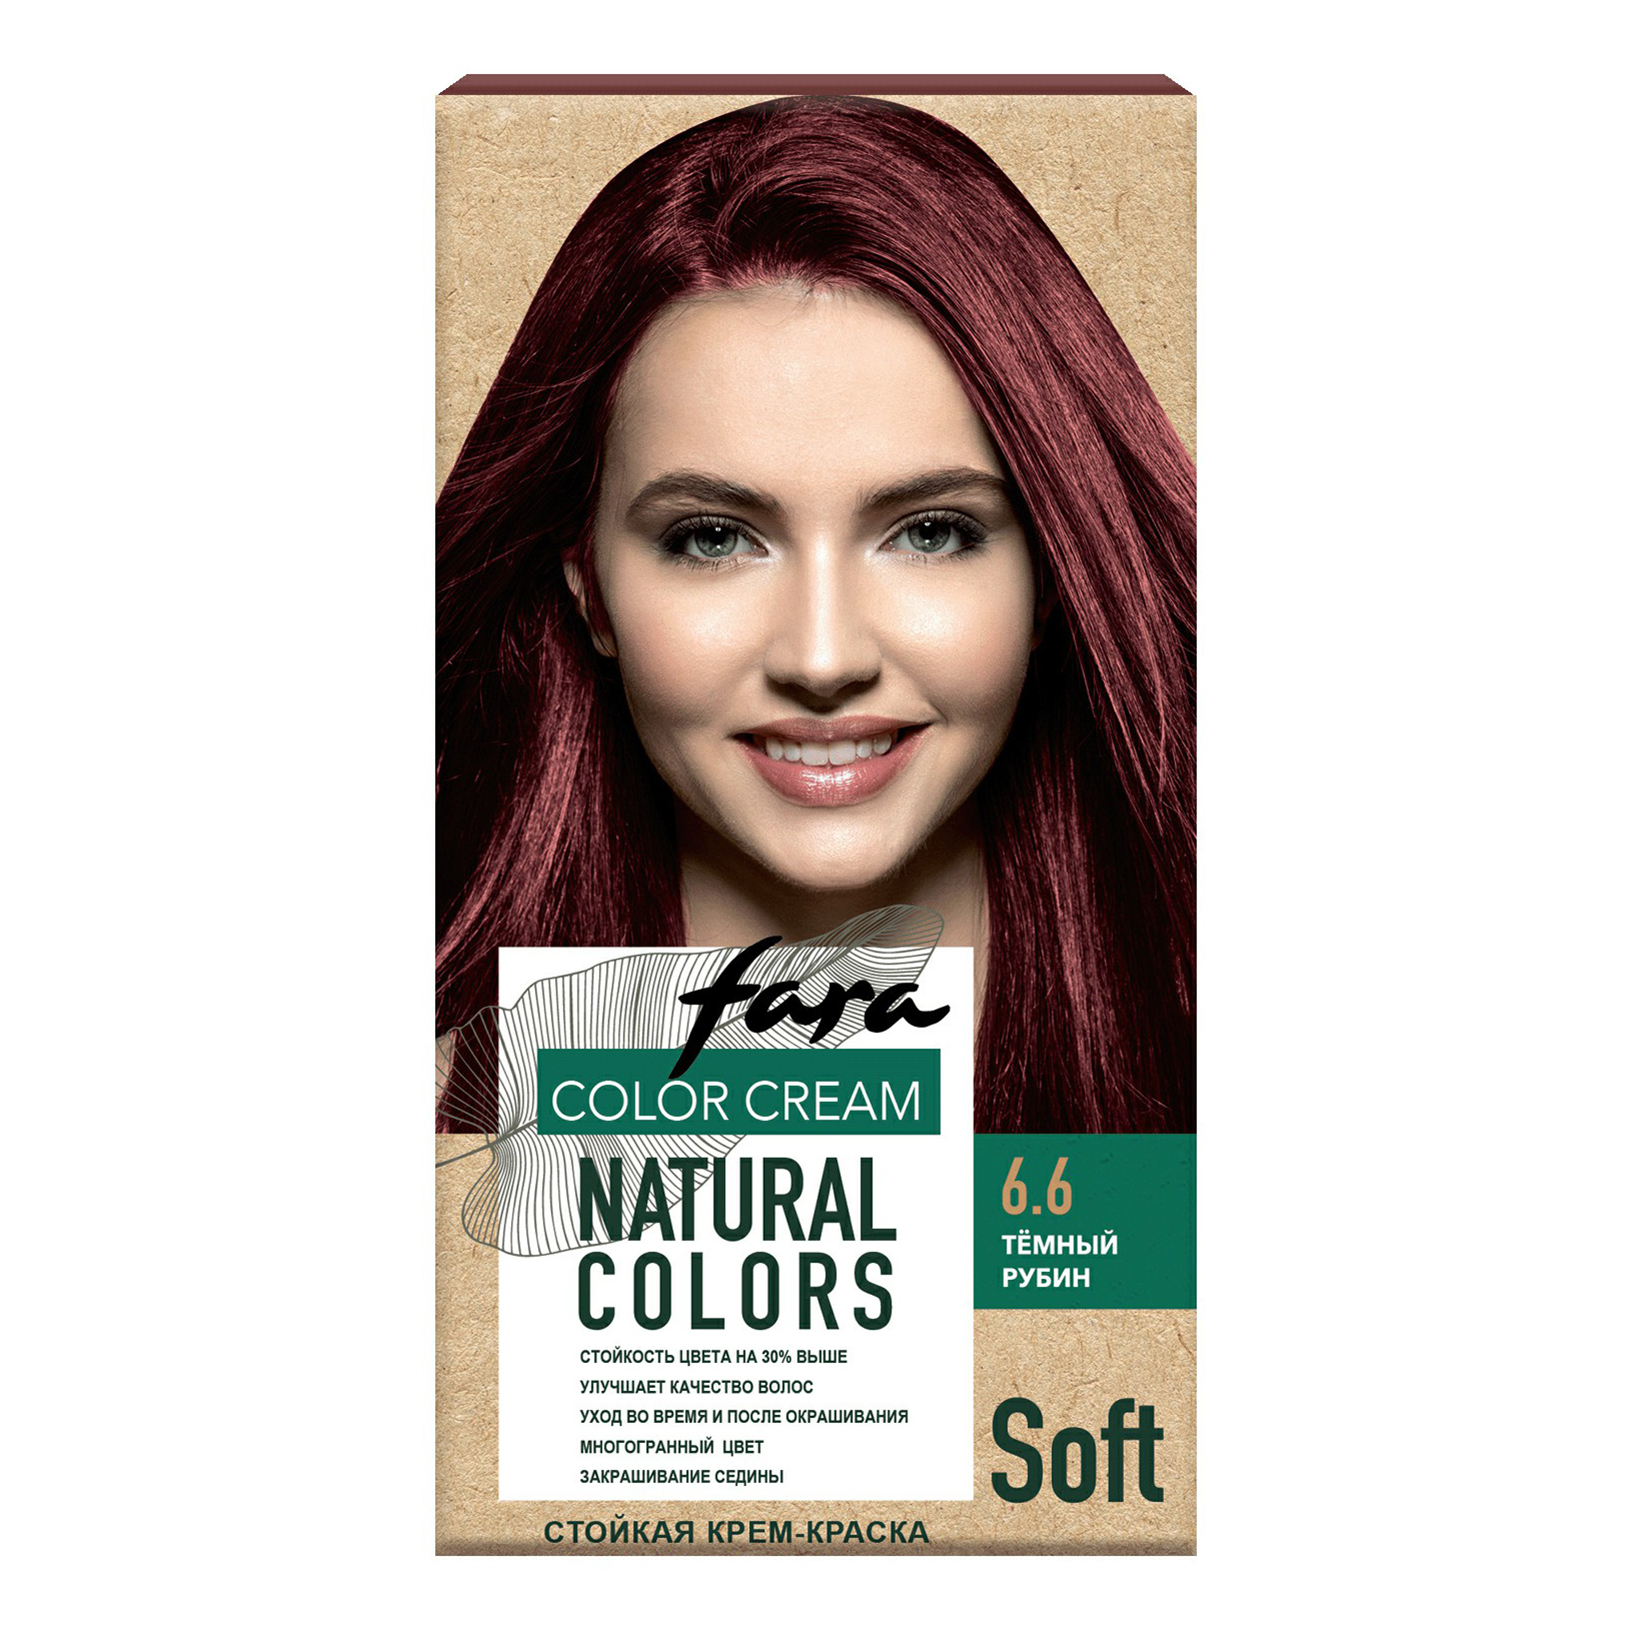 Крем-краска для волос Fara Natural Colors Soft 324 Темный рубин 150 мл shot 6 1 крем краска для волос темный блонд пепельный sh btb natural 100 мл